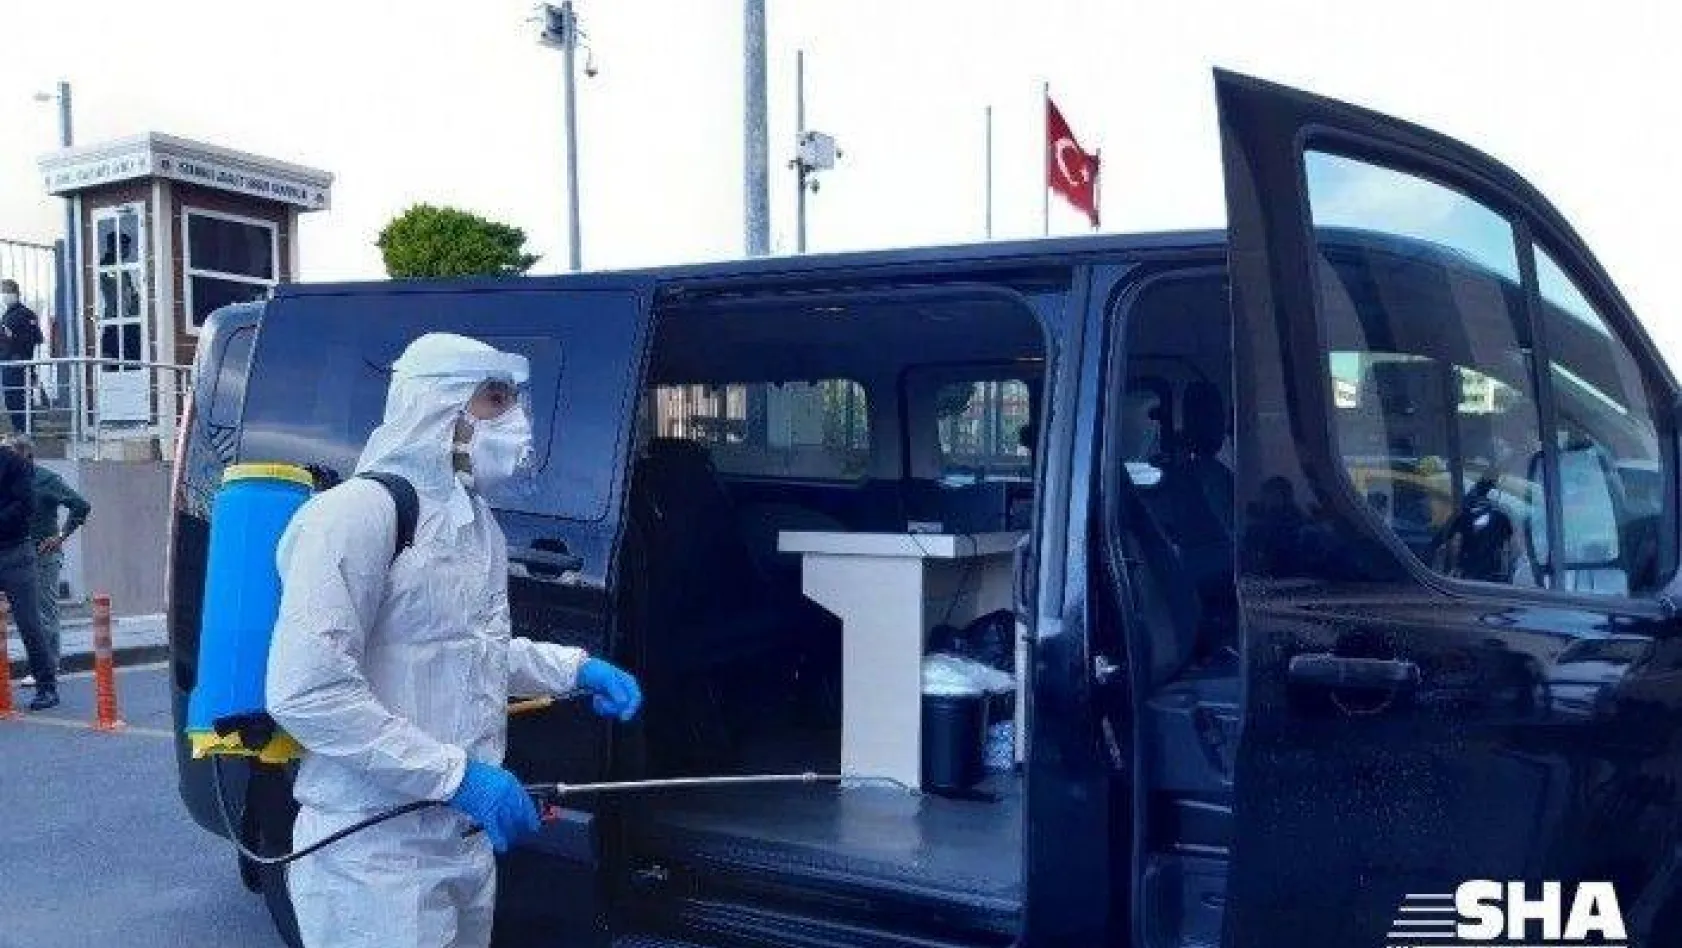 İstanbul Adalet Sarayı'ndaki korona virüs önlemleri görüntülendi